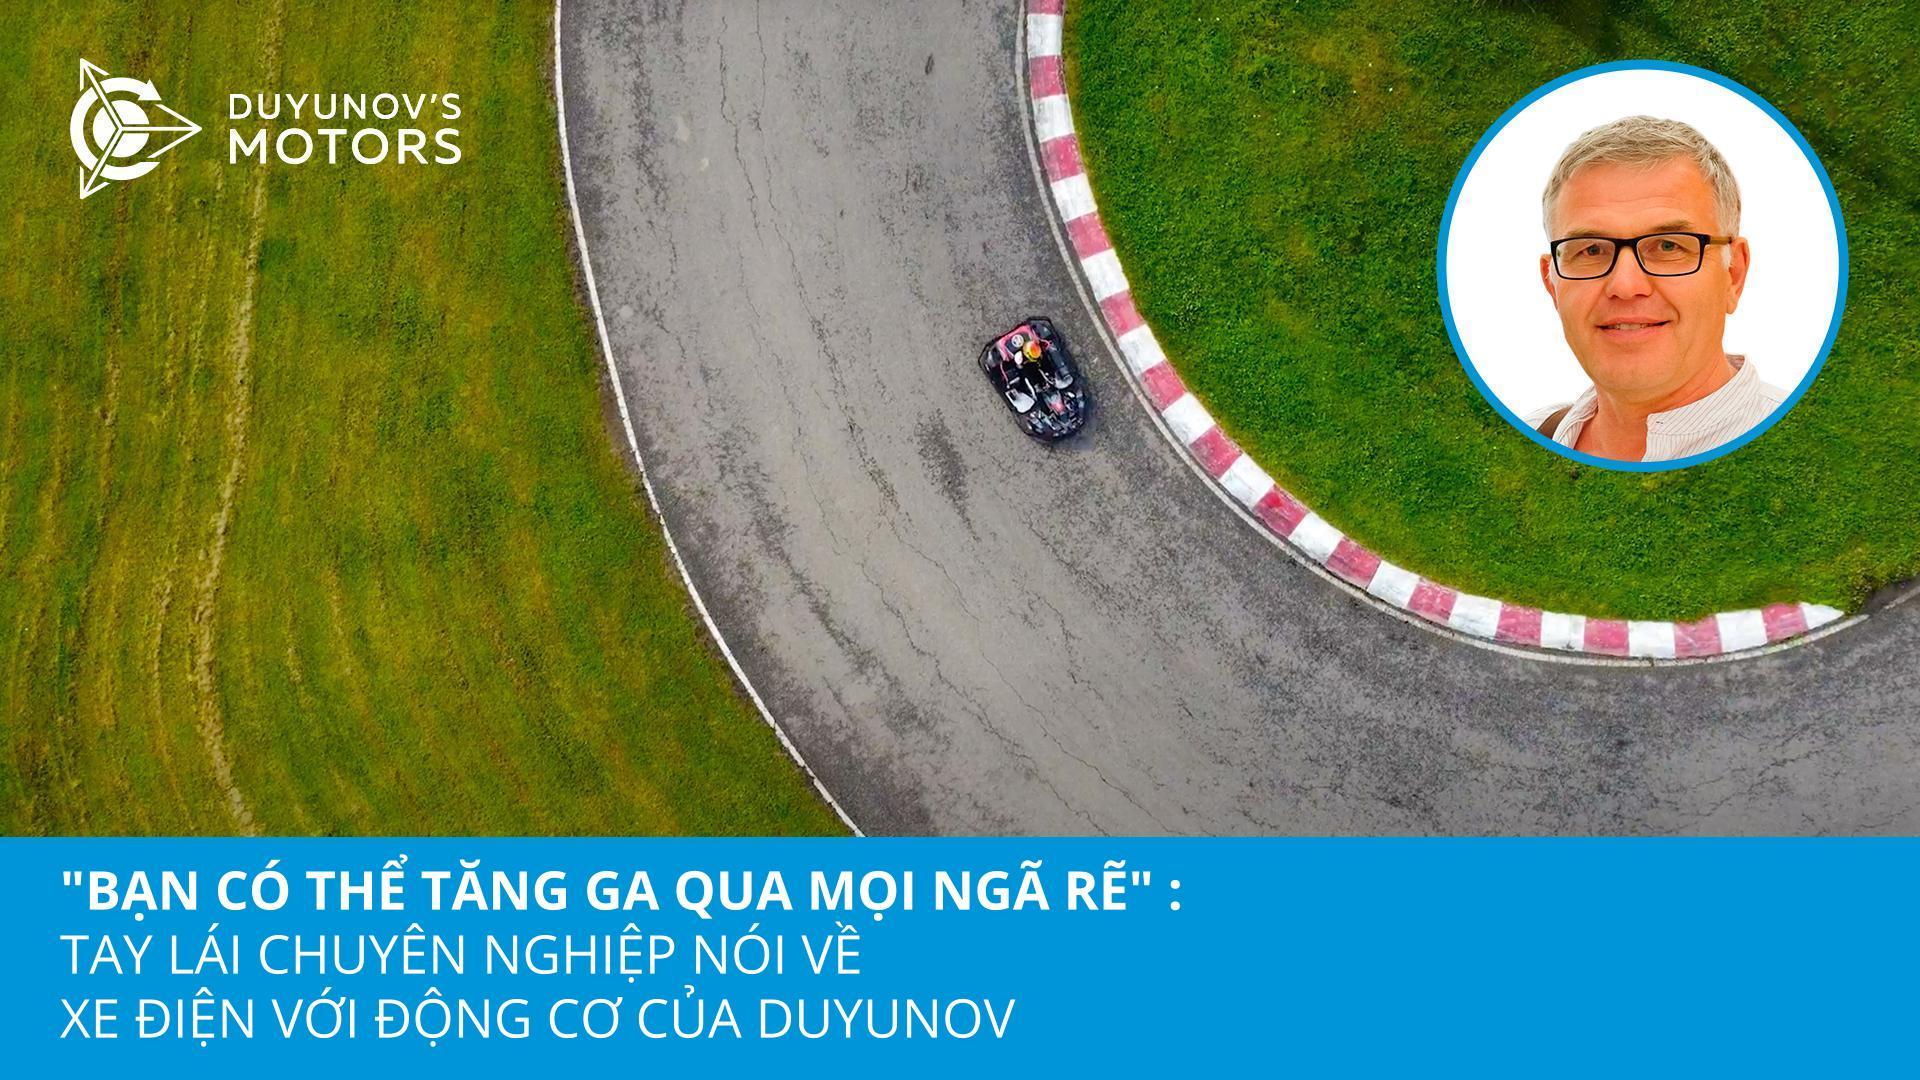 "Bạn có thể tăng ga hết mức ở bất kỳ ngã rẽ nào": tay lái chuyên nghiệp nói về xe kart chạy điện có động cơ của Duyunov